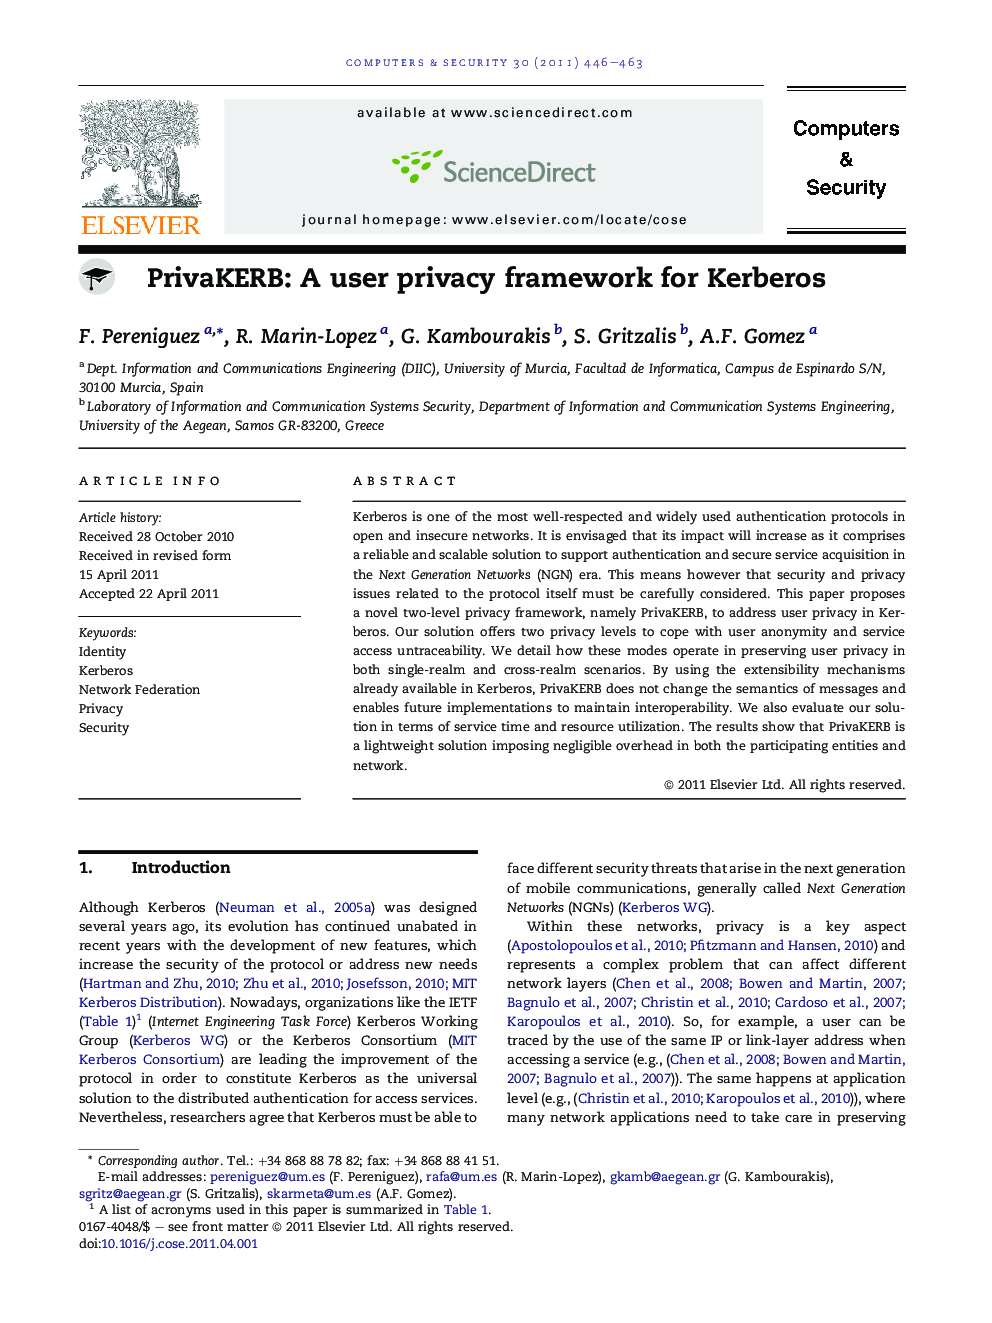 PrivaKERB: A user privacy framework for Kerberos